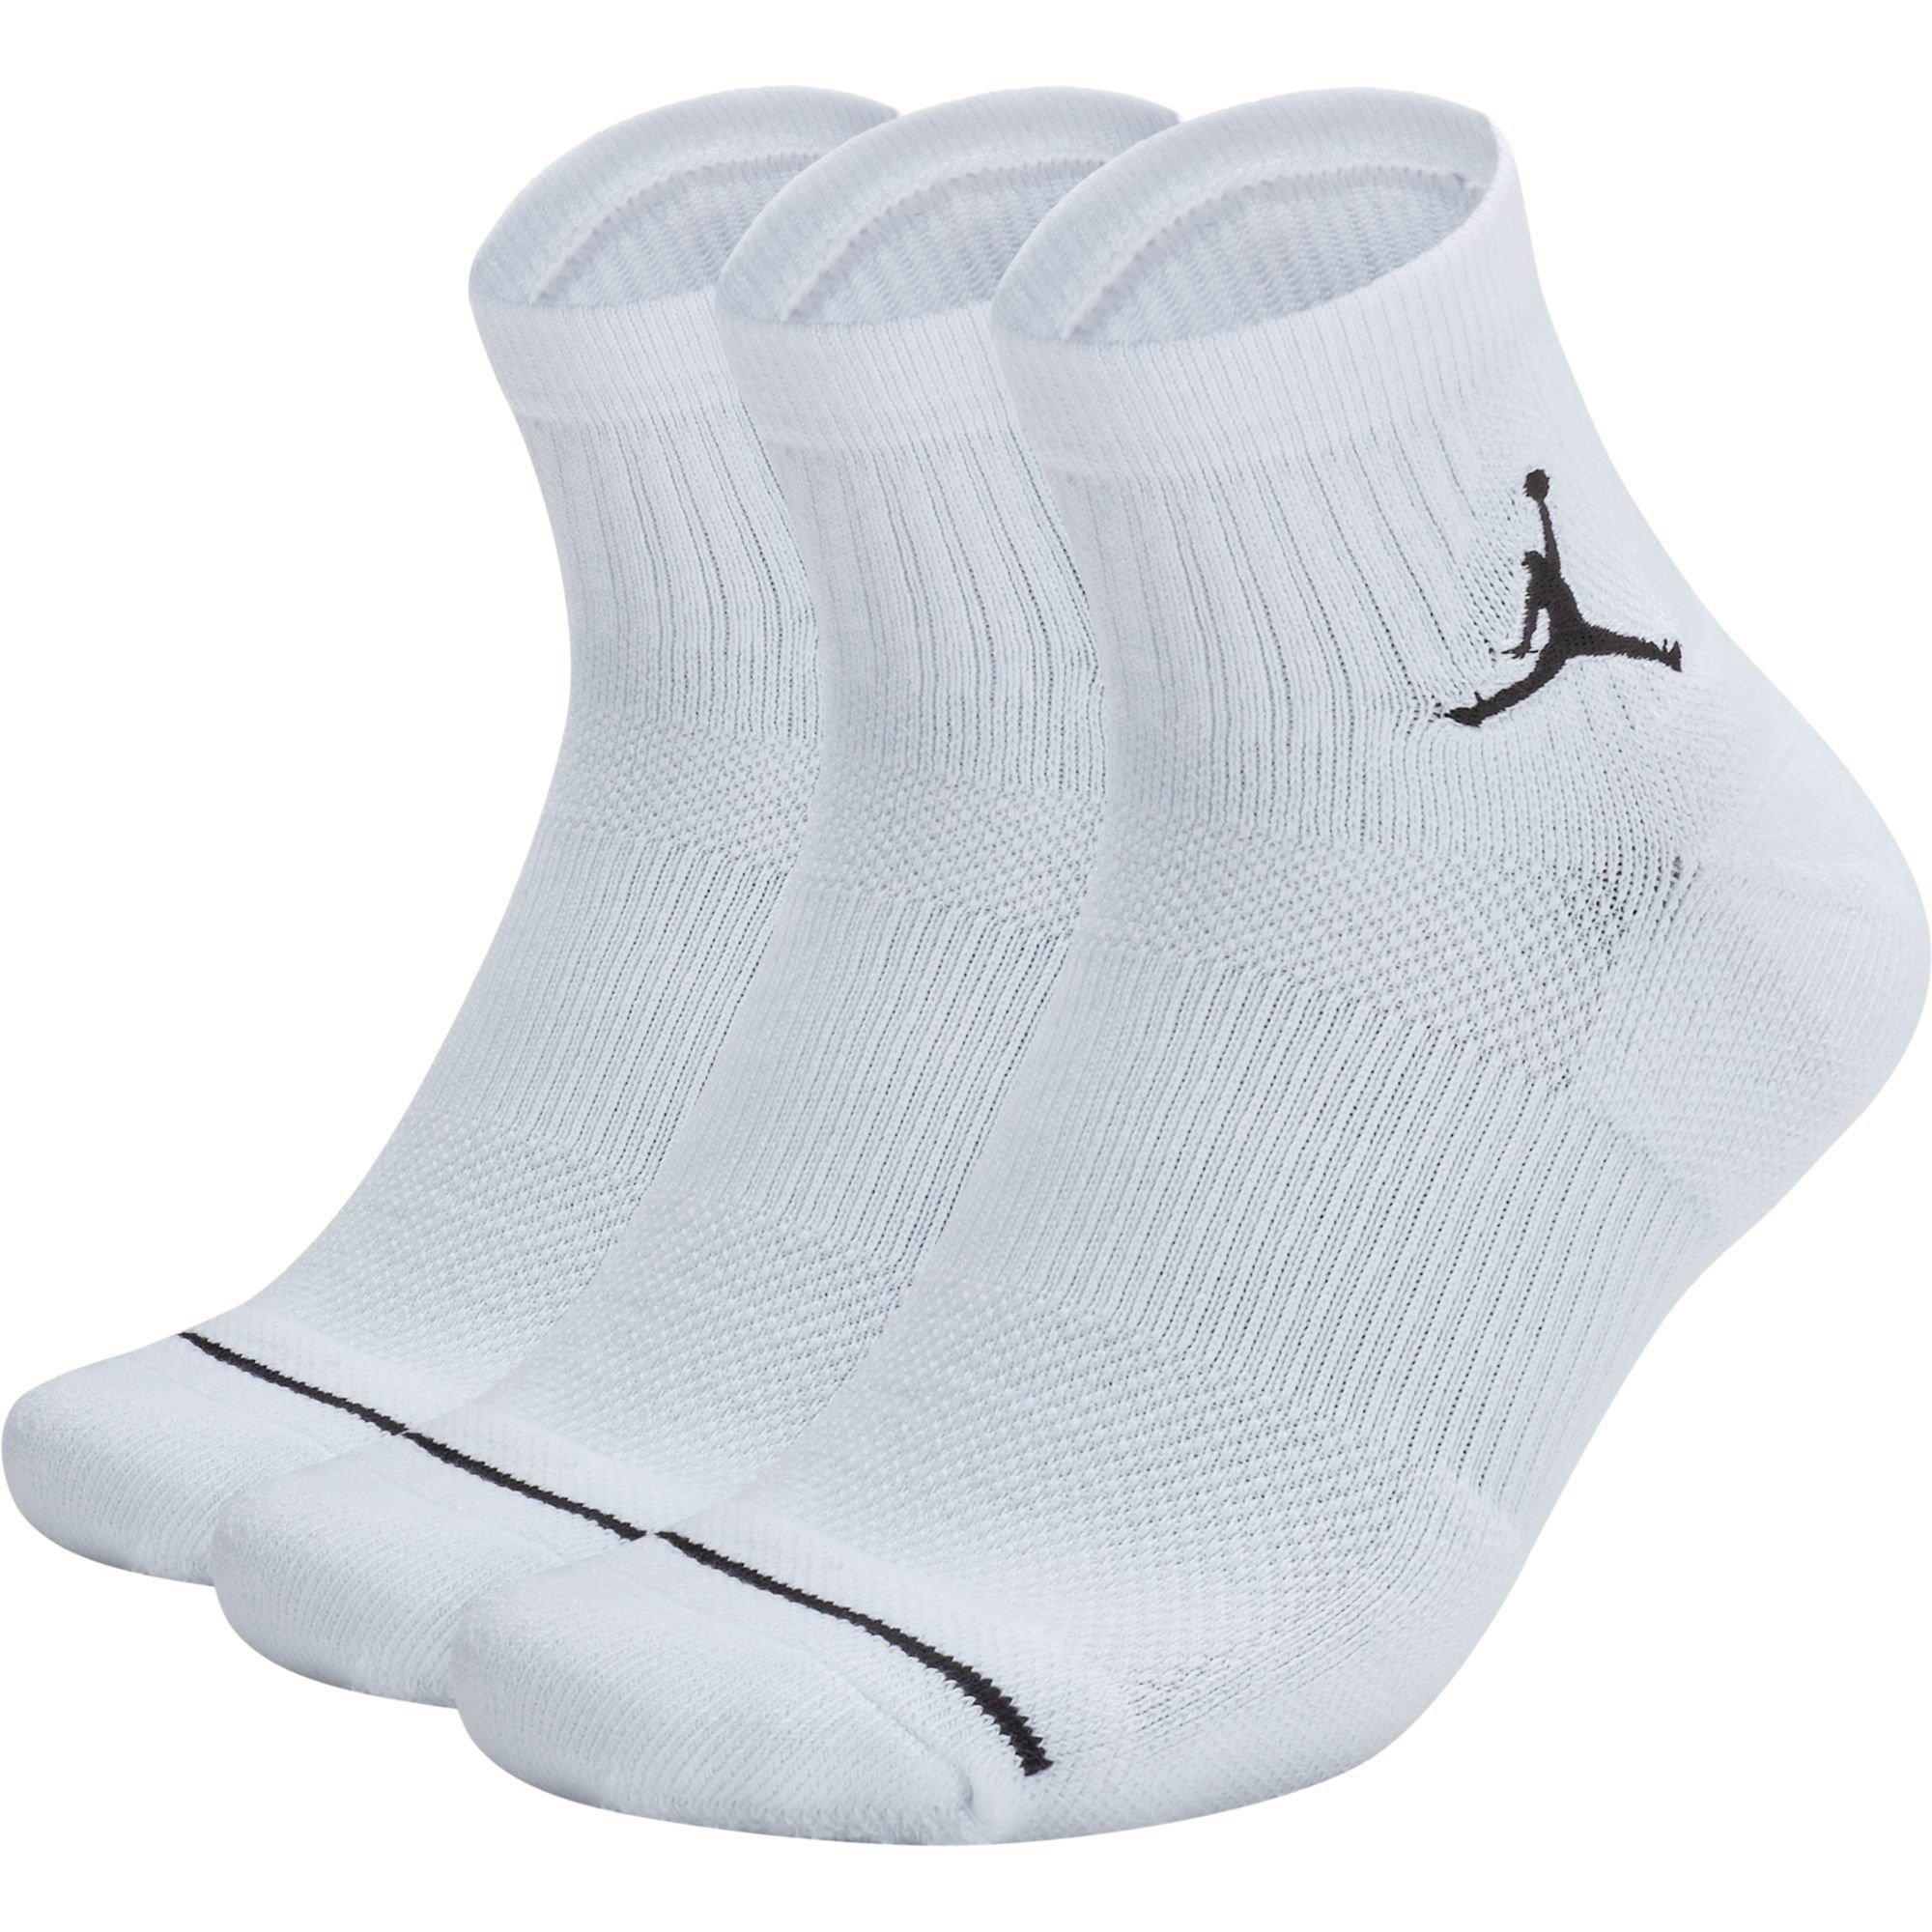 white jordan socks